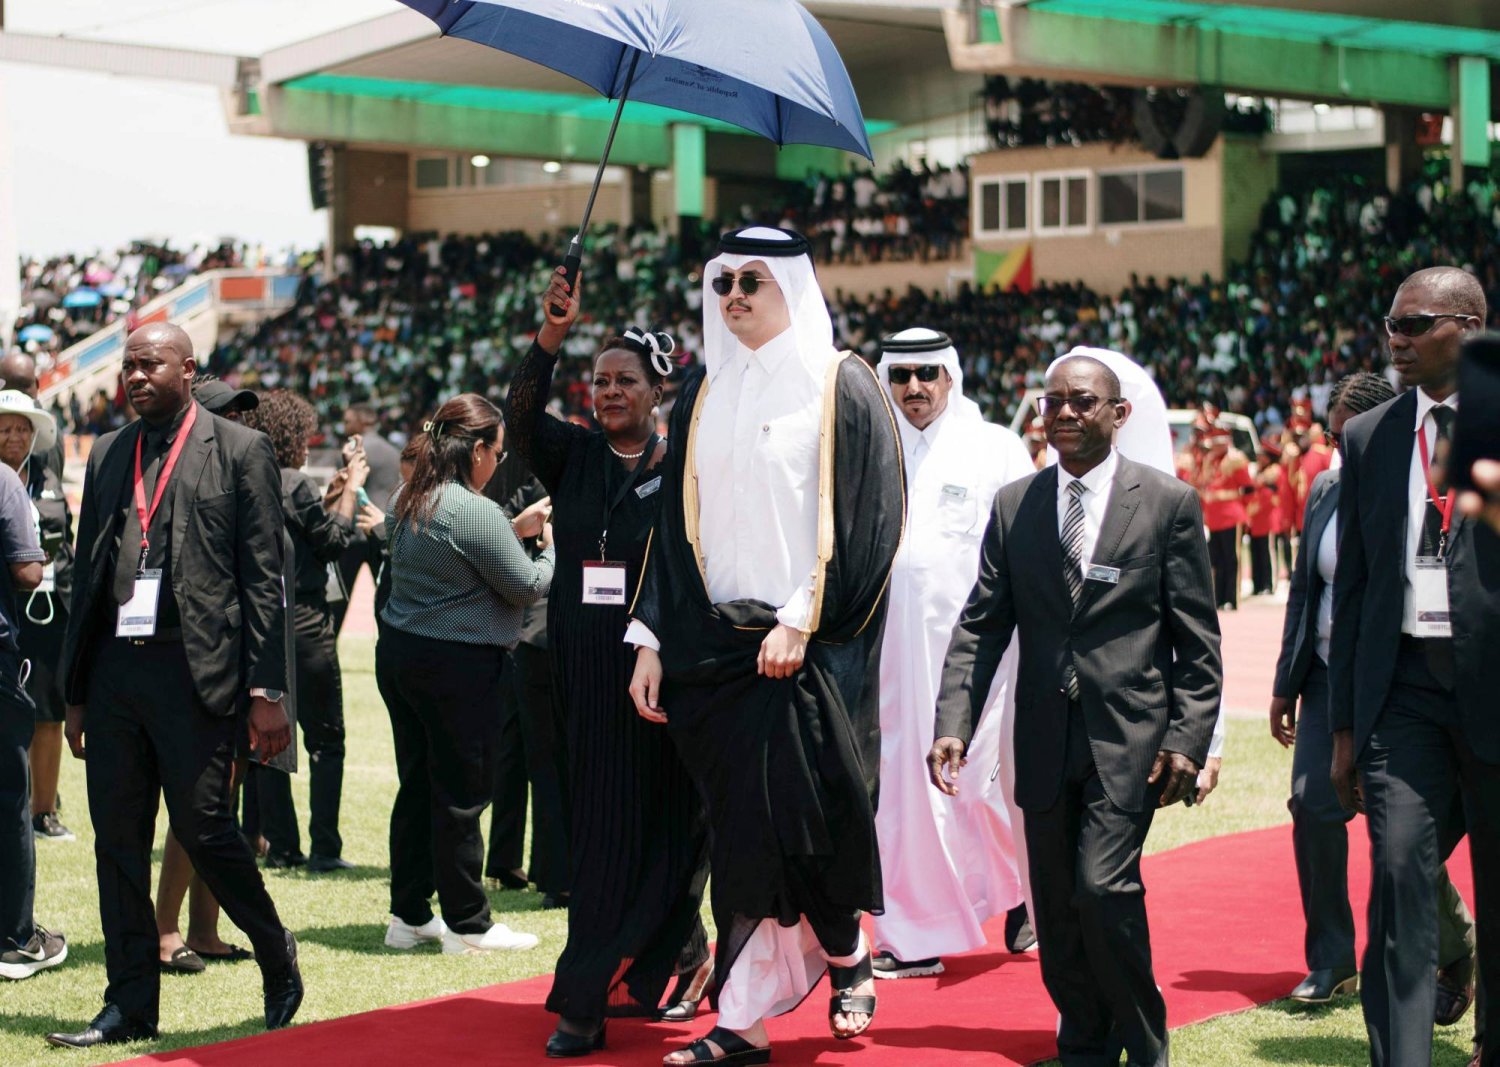 أمير قطر الشيخ تميم بن حمد آل ثاني لدى وصوله السبت إلى استاد ويندهوك في ناميبيا بمناسبة تكريم ذكرى رئيس ناميبيا السابق الحاج جينغوب (أ.ف.ب)